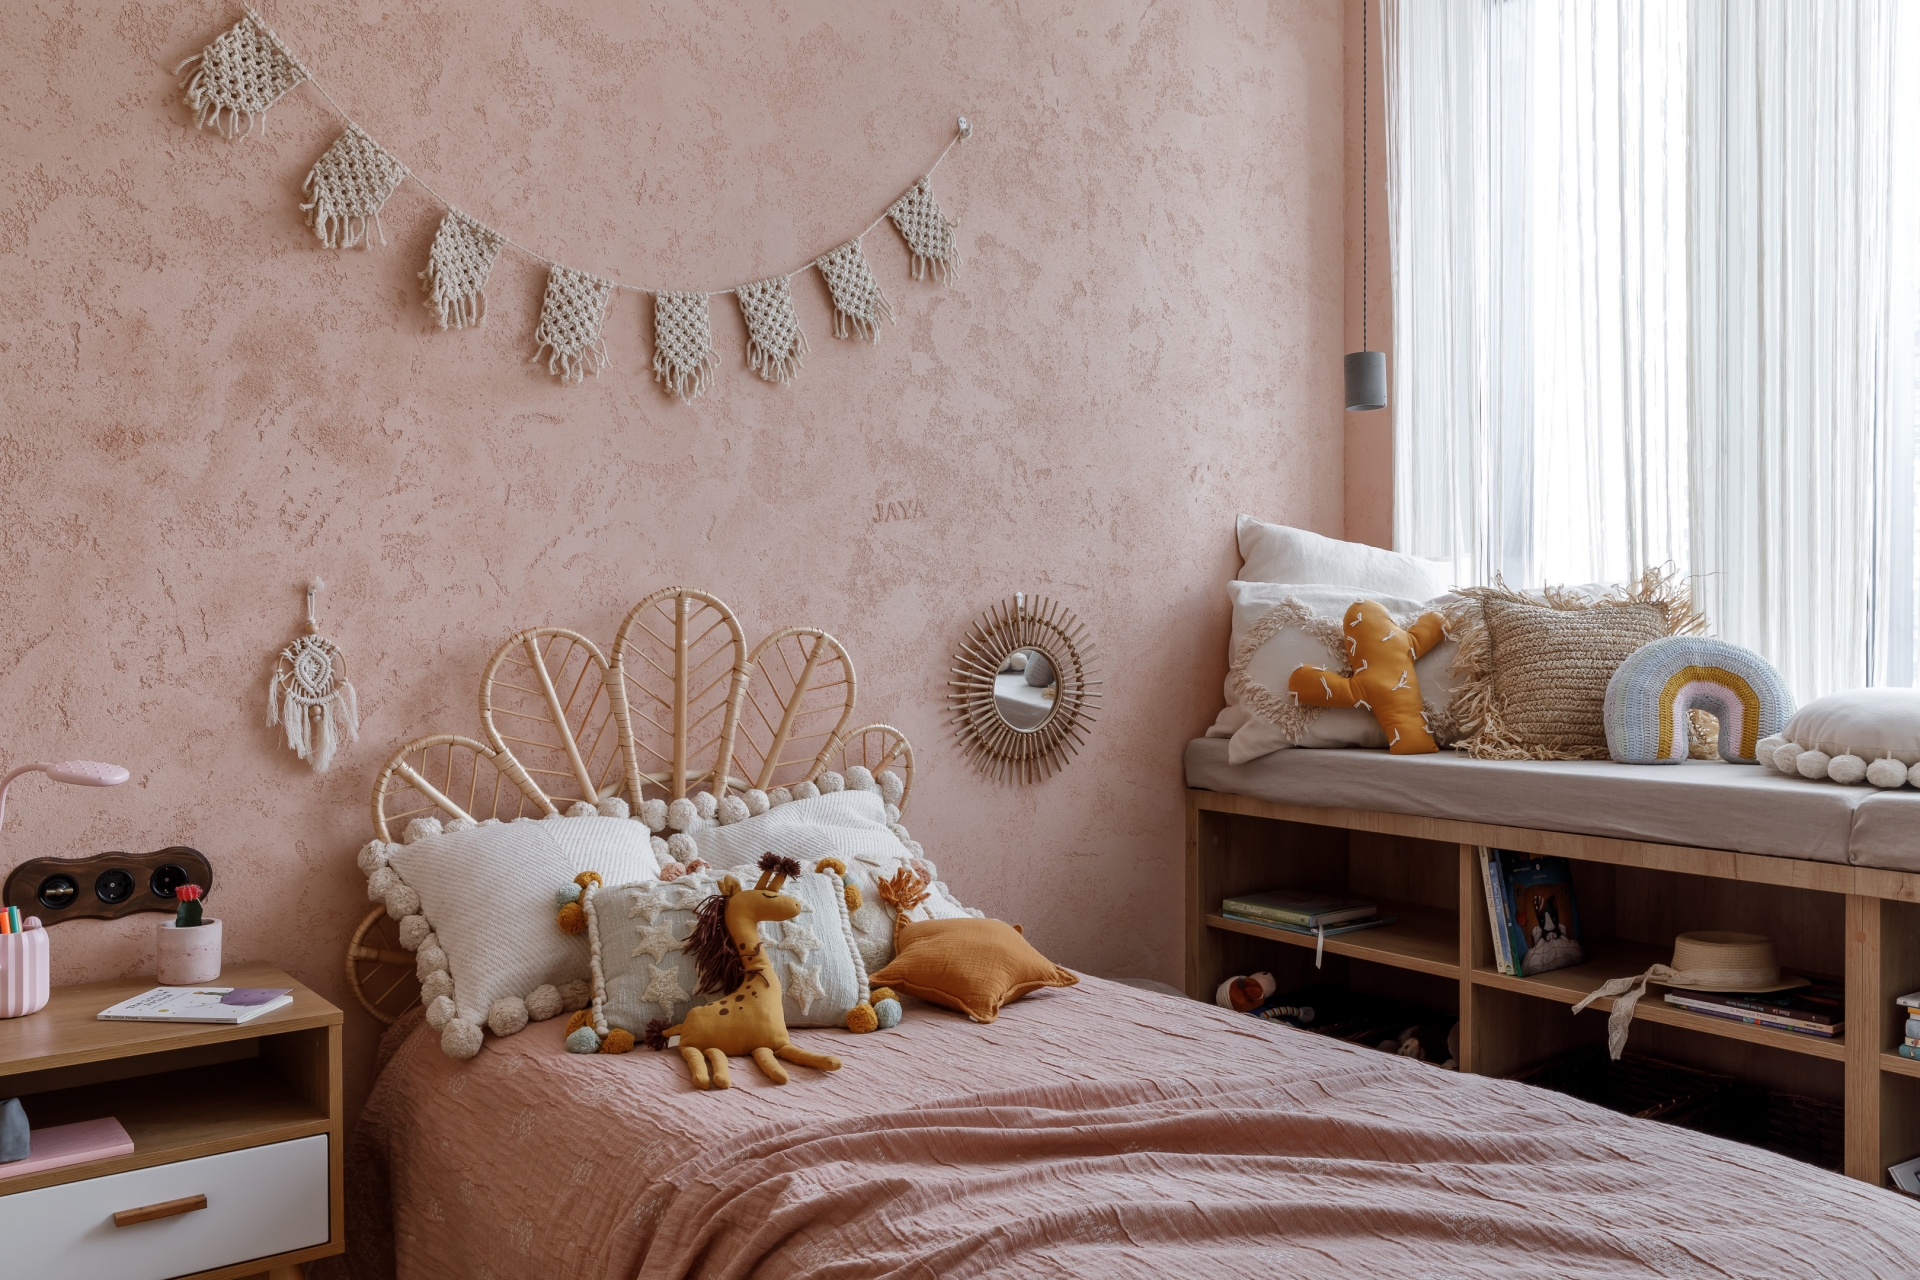 Riêng phòng ngủ của cô con gái được sử dụng gam màu hồng ngọt ngào với đầu giường hình đuôi chim công đẹp mắt.